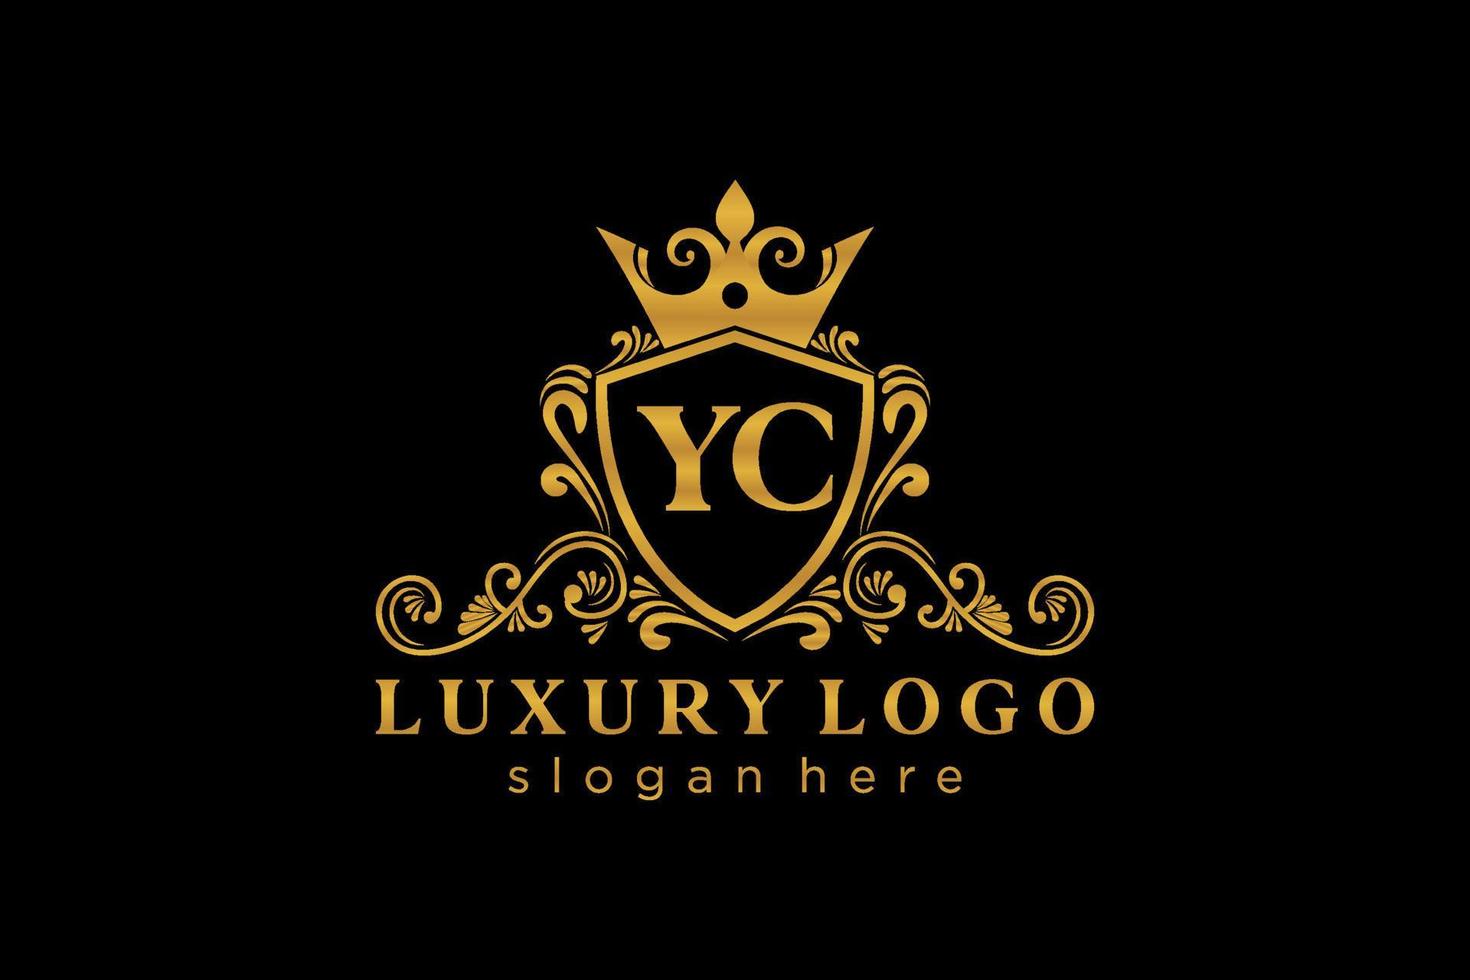 Anfangsbuchstabe Yc Royal Luxury Logo Vorlage in Vektorgrafiken für Restaurant, Lizenzgebühren, Boutique, Café, Hotel, heraldisch, Schmuck, Mode und andere Vektorillustrationen. vektor